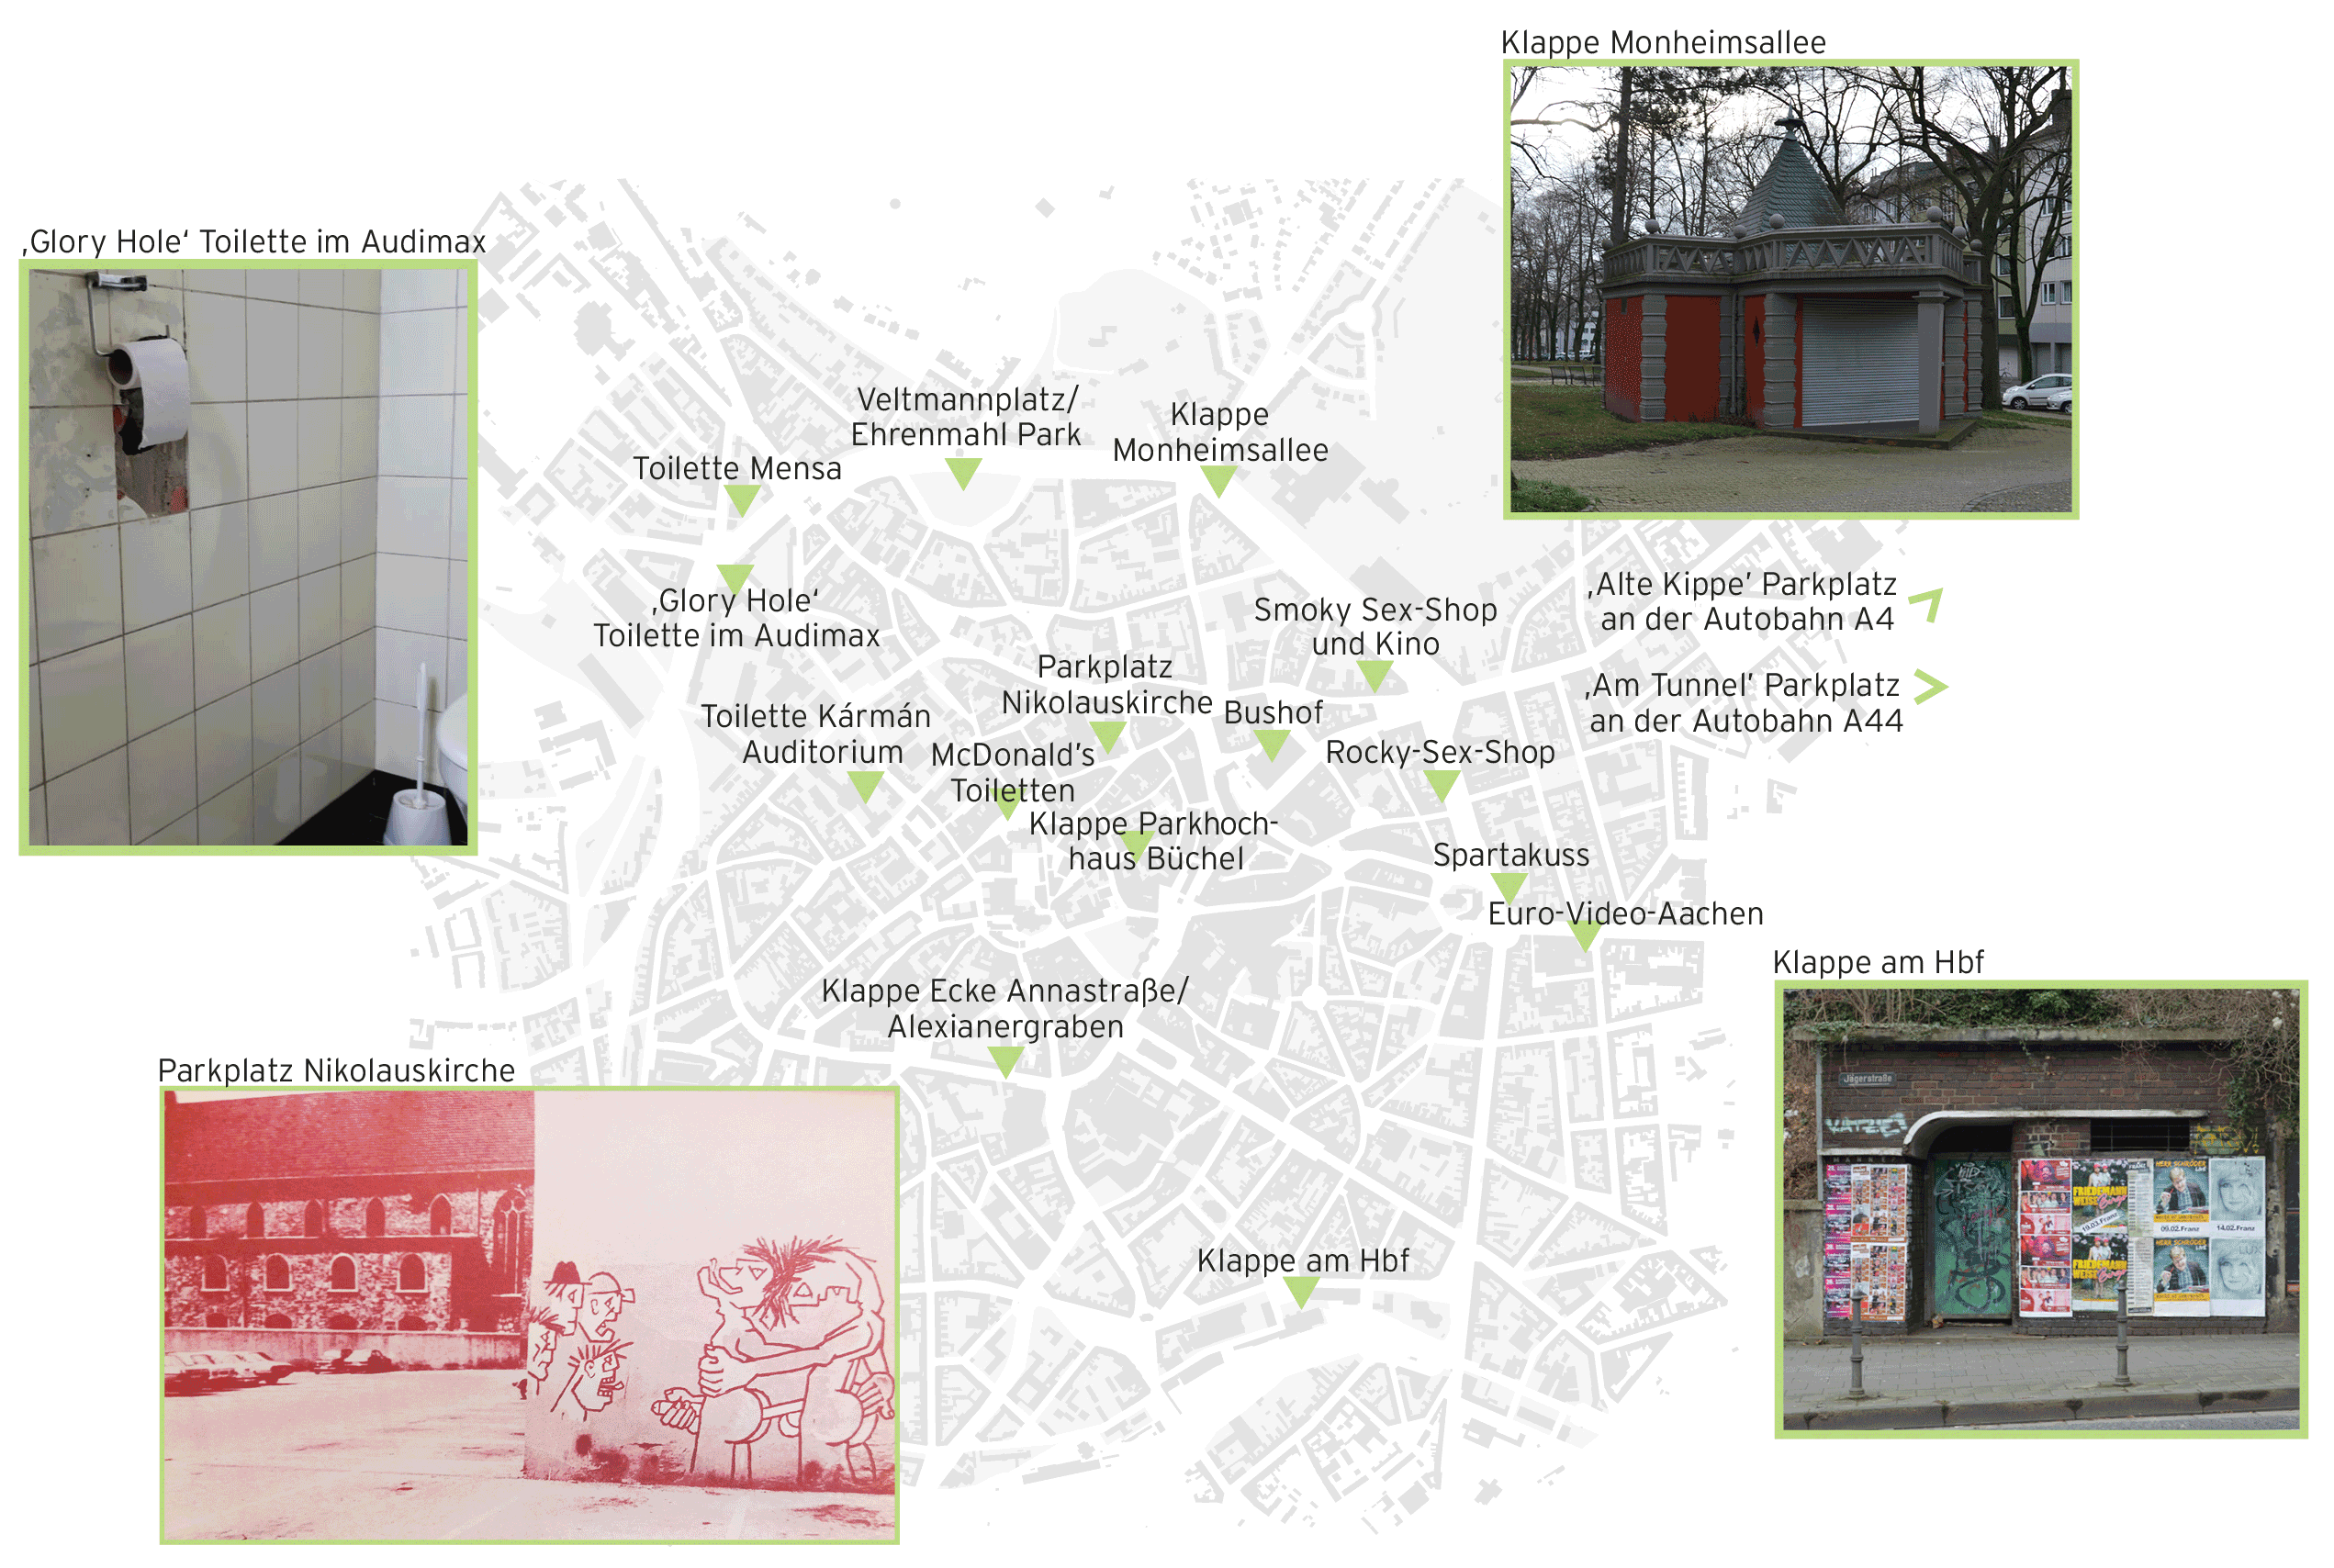 Abb. 1 Kartierung der Klappen und Cruising-Areale in Aachen, 1970-2020 (eigene Darstellung von QUEERingAACHEN, mit eigenen Fotografien und historischem Foto der Wandmalerei aus dem „Rosa Kalender“, Aachener Printenschwestern 1981)